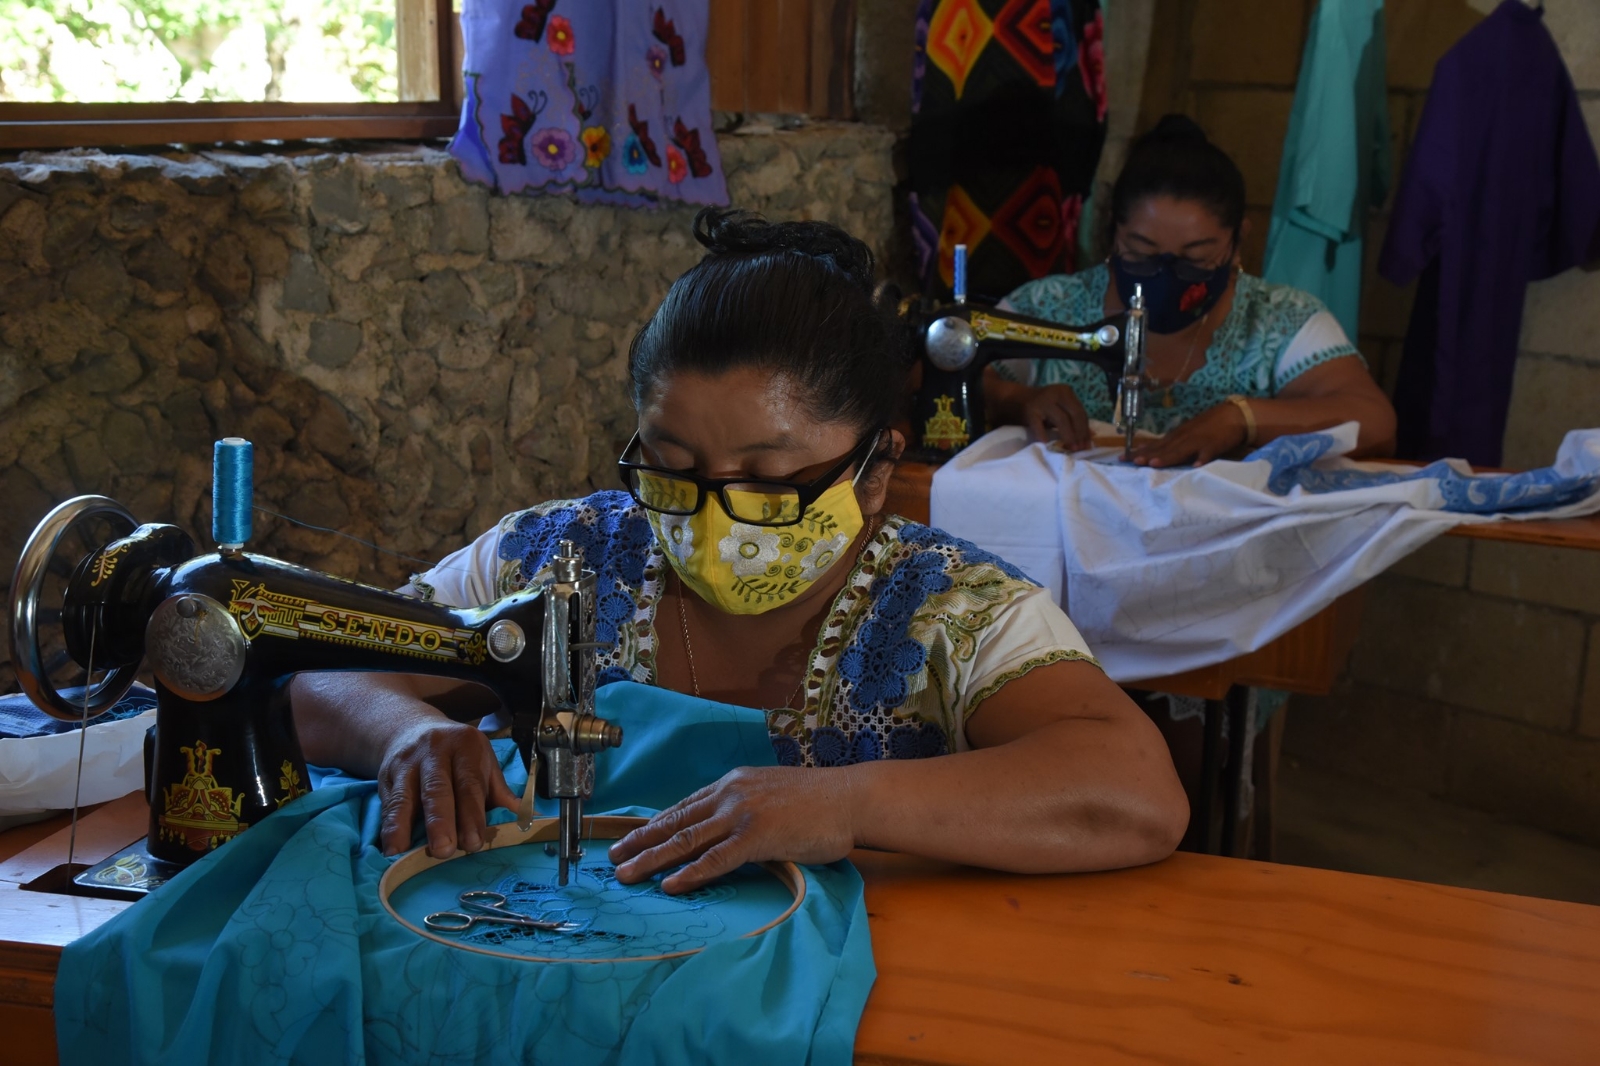 El colectivo Loo'l pich es una agrupación de al menos 20 artesanas de la localidad de X-Pichil